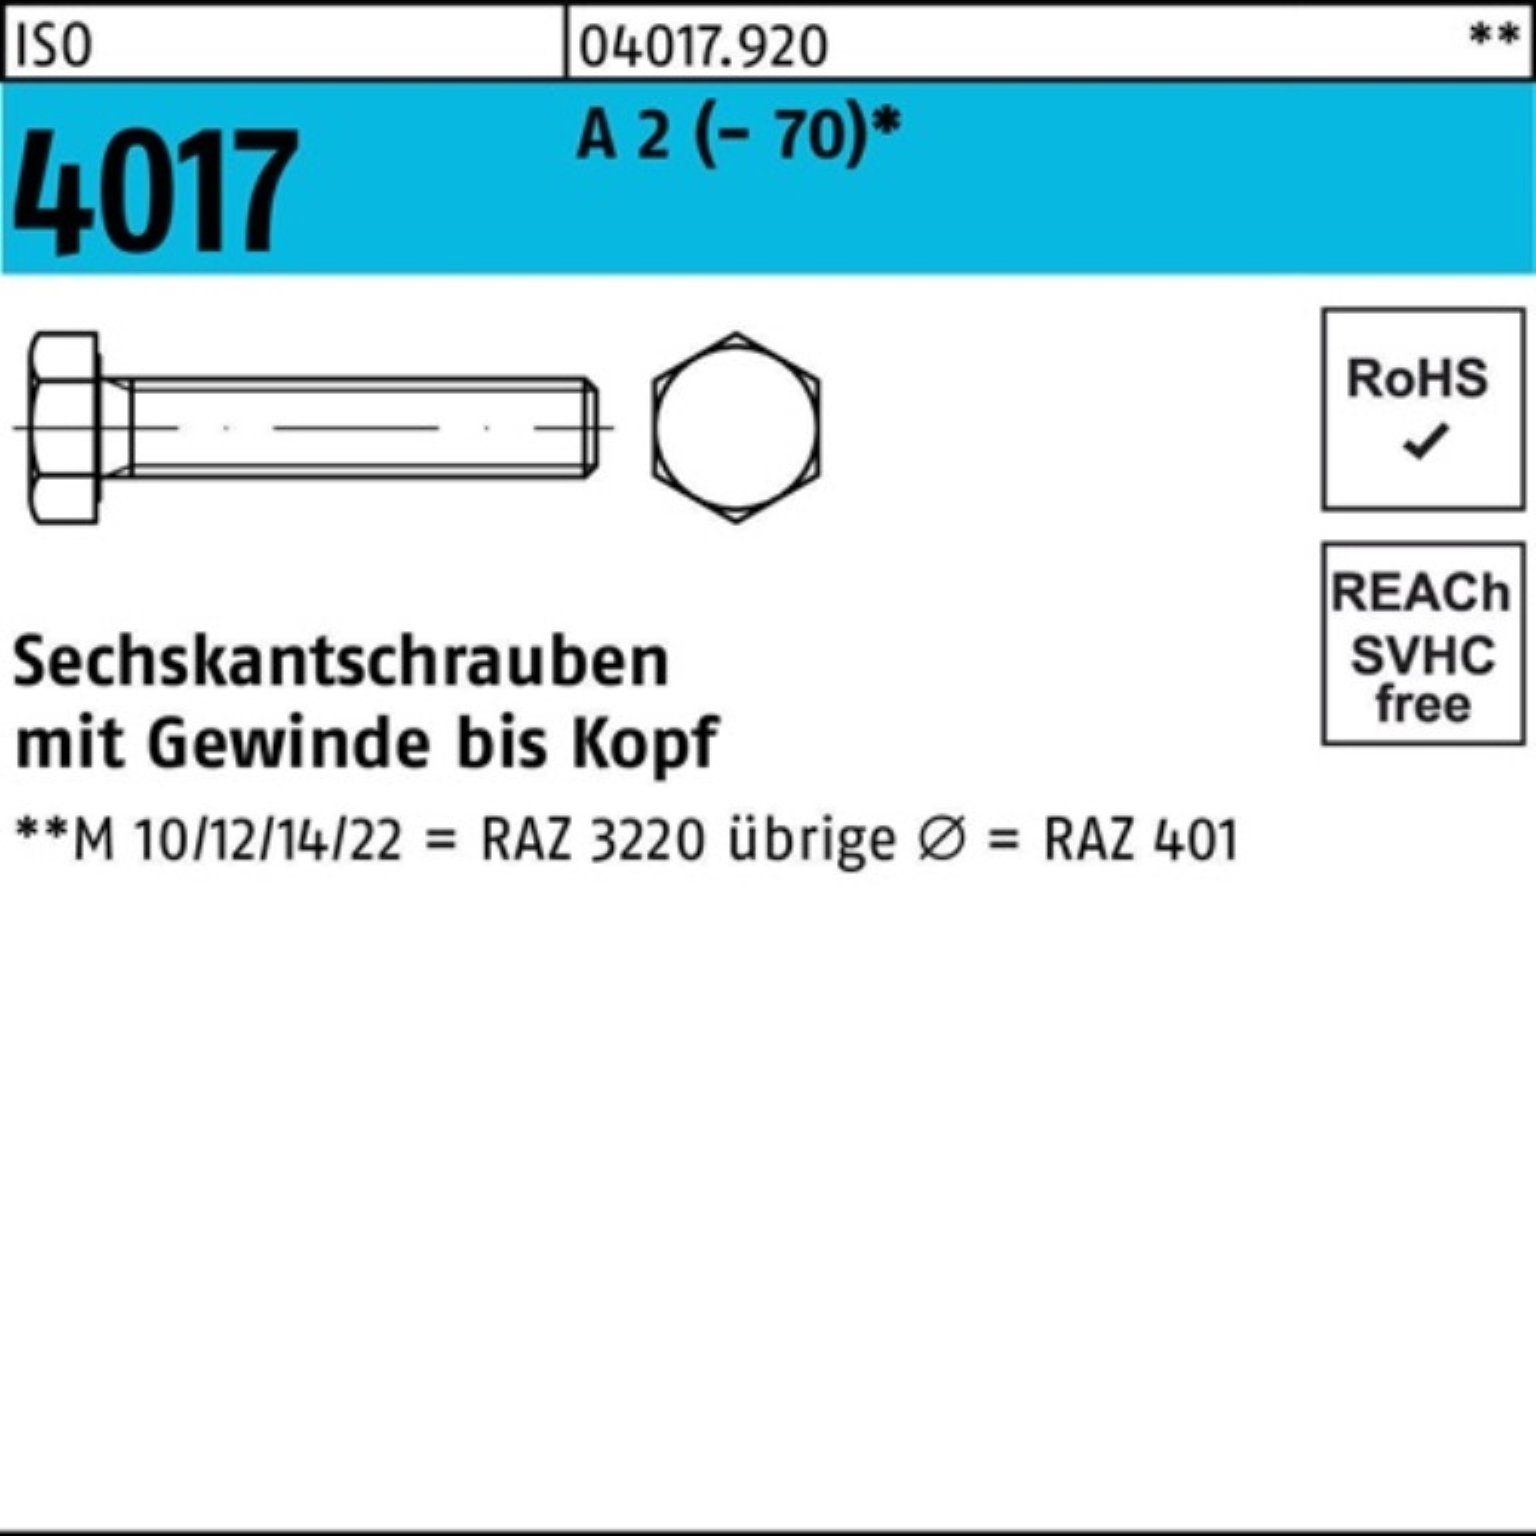 Bufab Sechskantschraube 100er Pack Sechskantschraube ISO 4017 VG M8x 85 A 2 (70) 50 Stück I